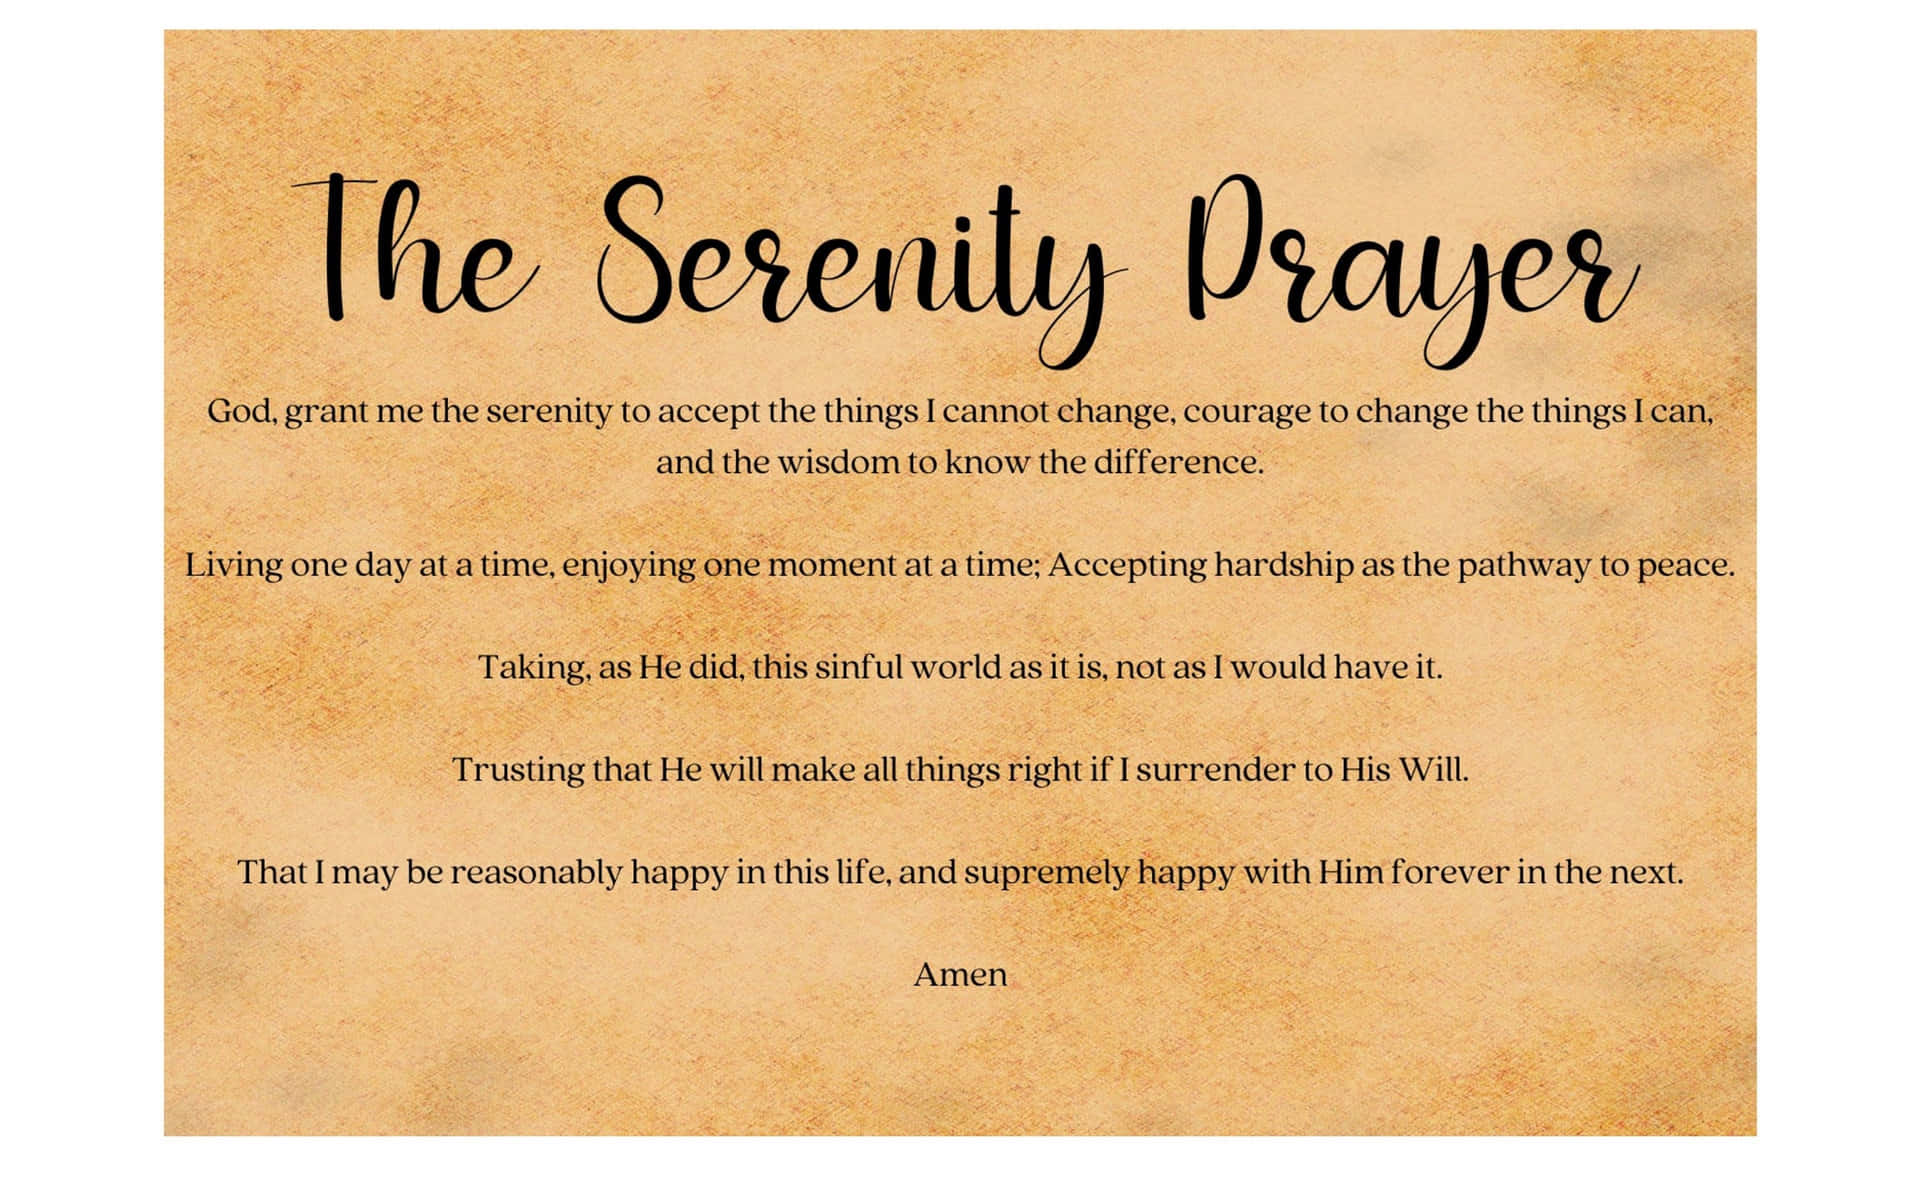 The Serenity Prayer Background